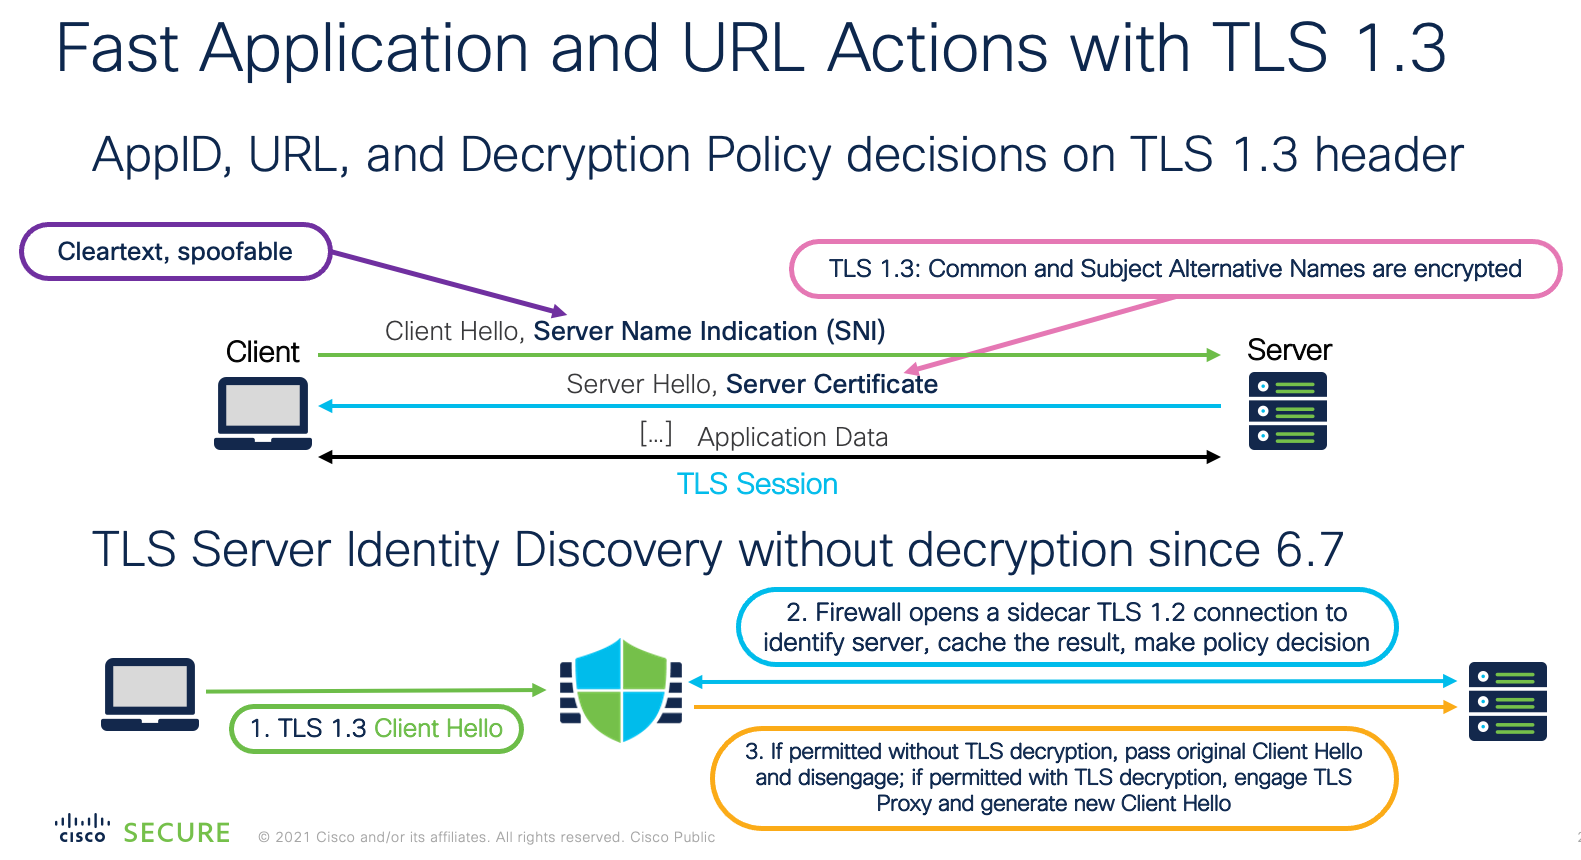 **Figure 8:** TLS Server Identity